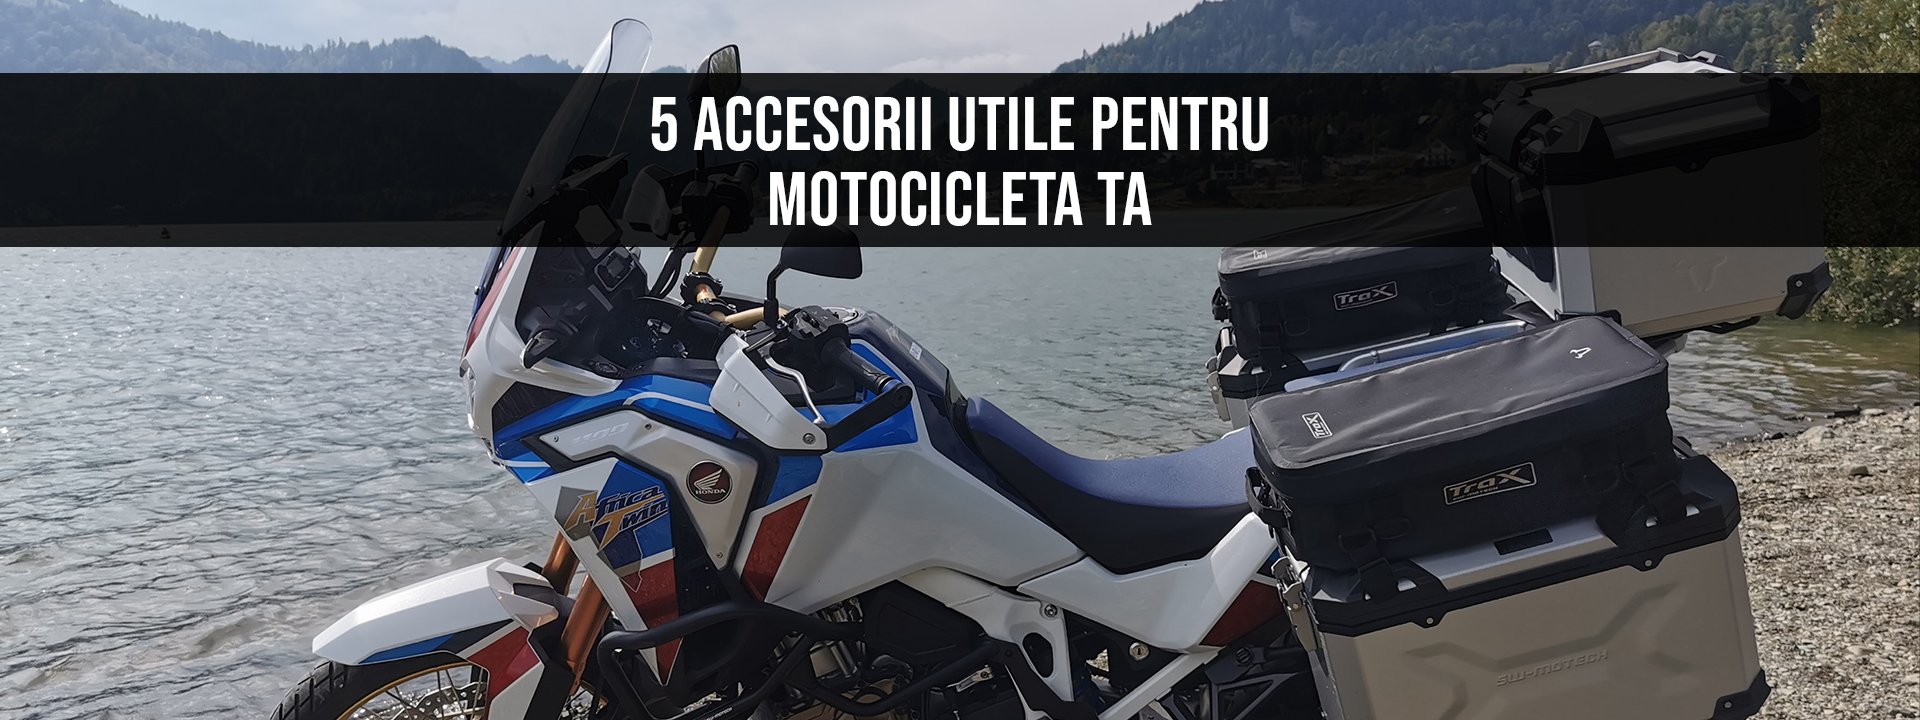 5 accesorii utile pentru motocicleta ta